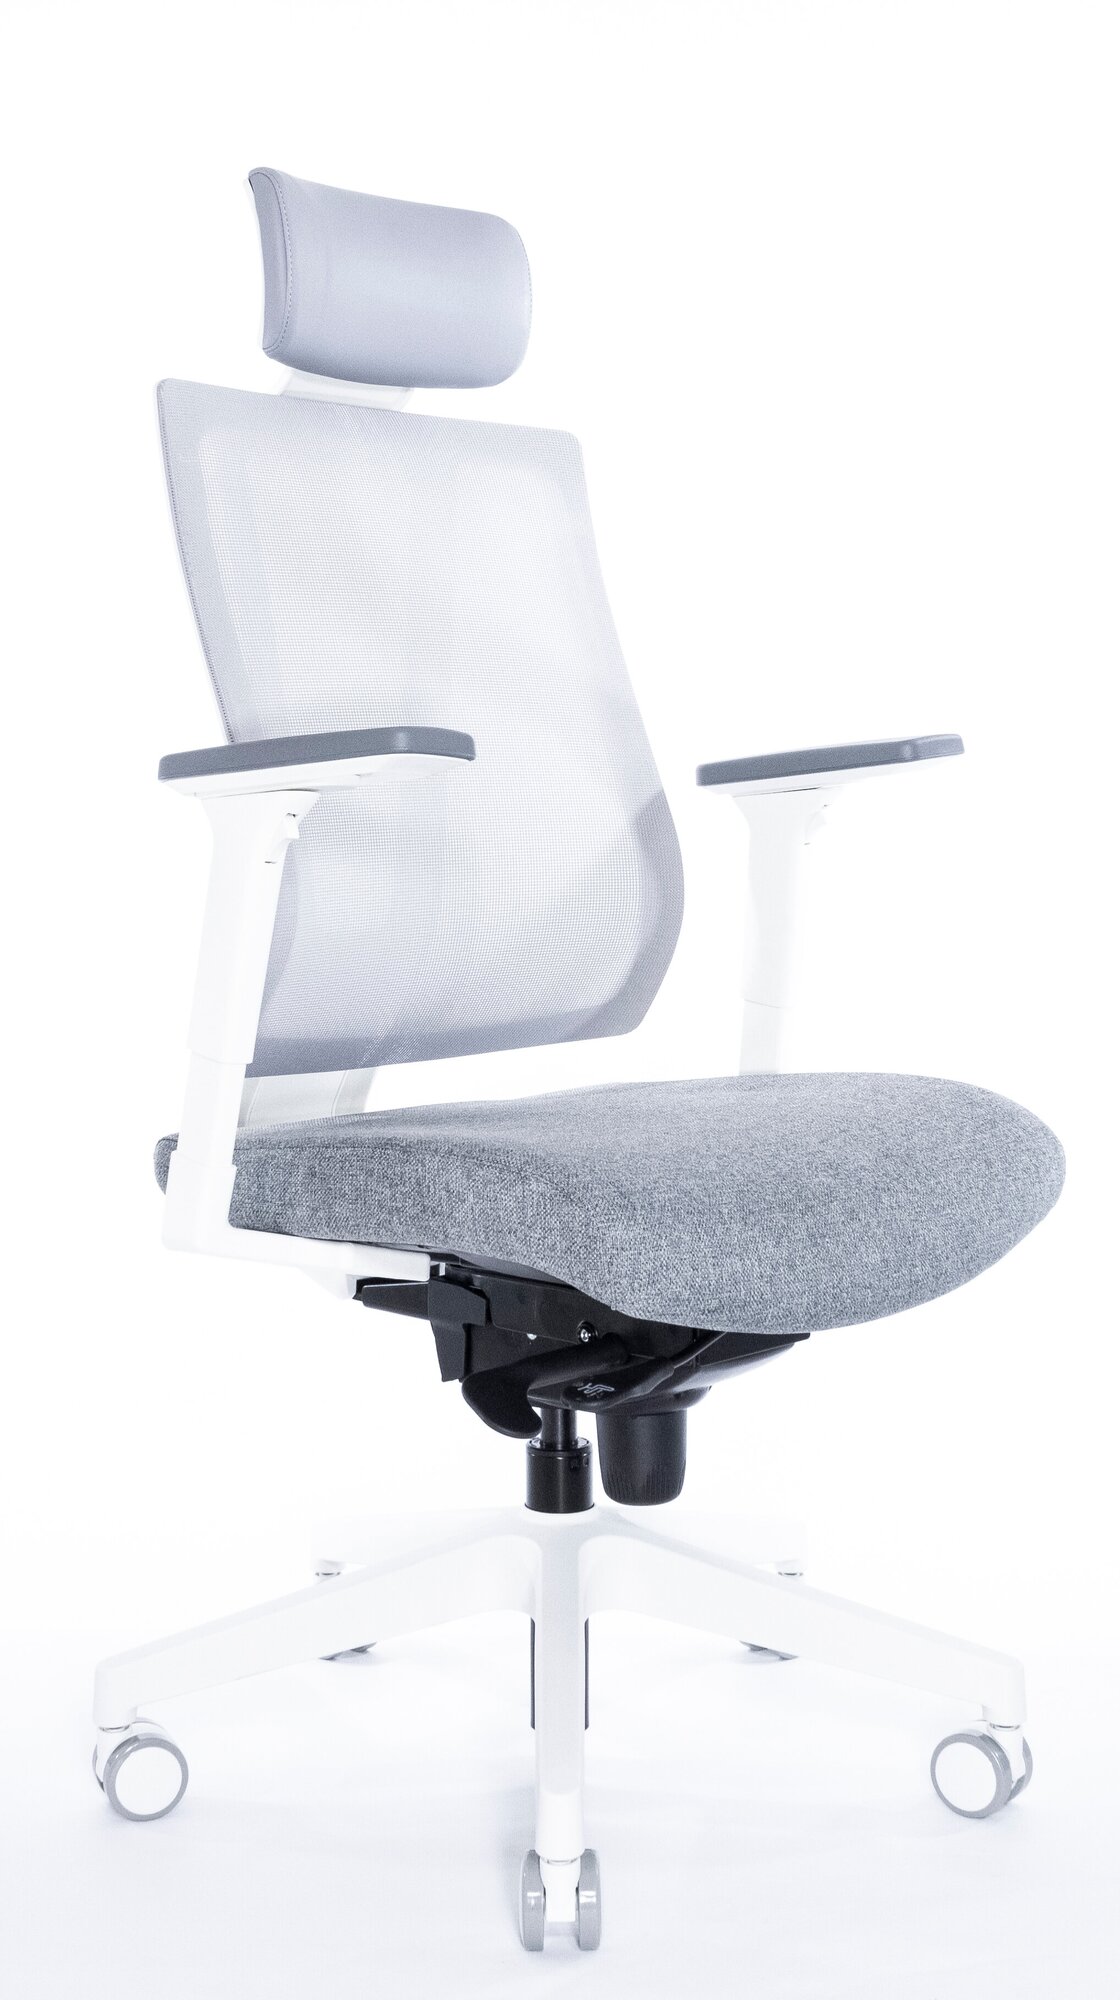 Ортопедическое кресло Falto G1 белая рама обивка ткань/сетка, сиденье слайдер, подголовник регулируемый, спинка адаптивная серый